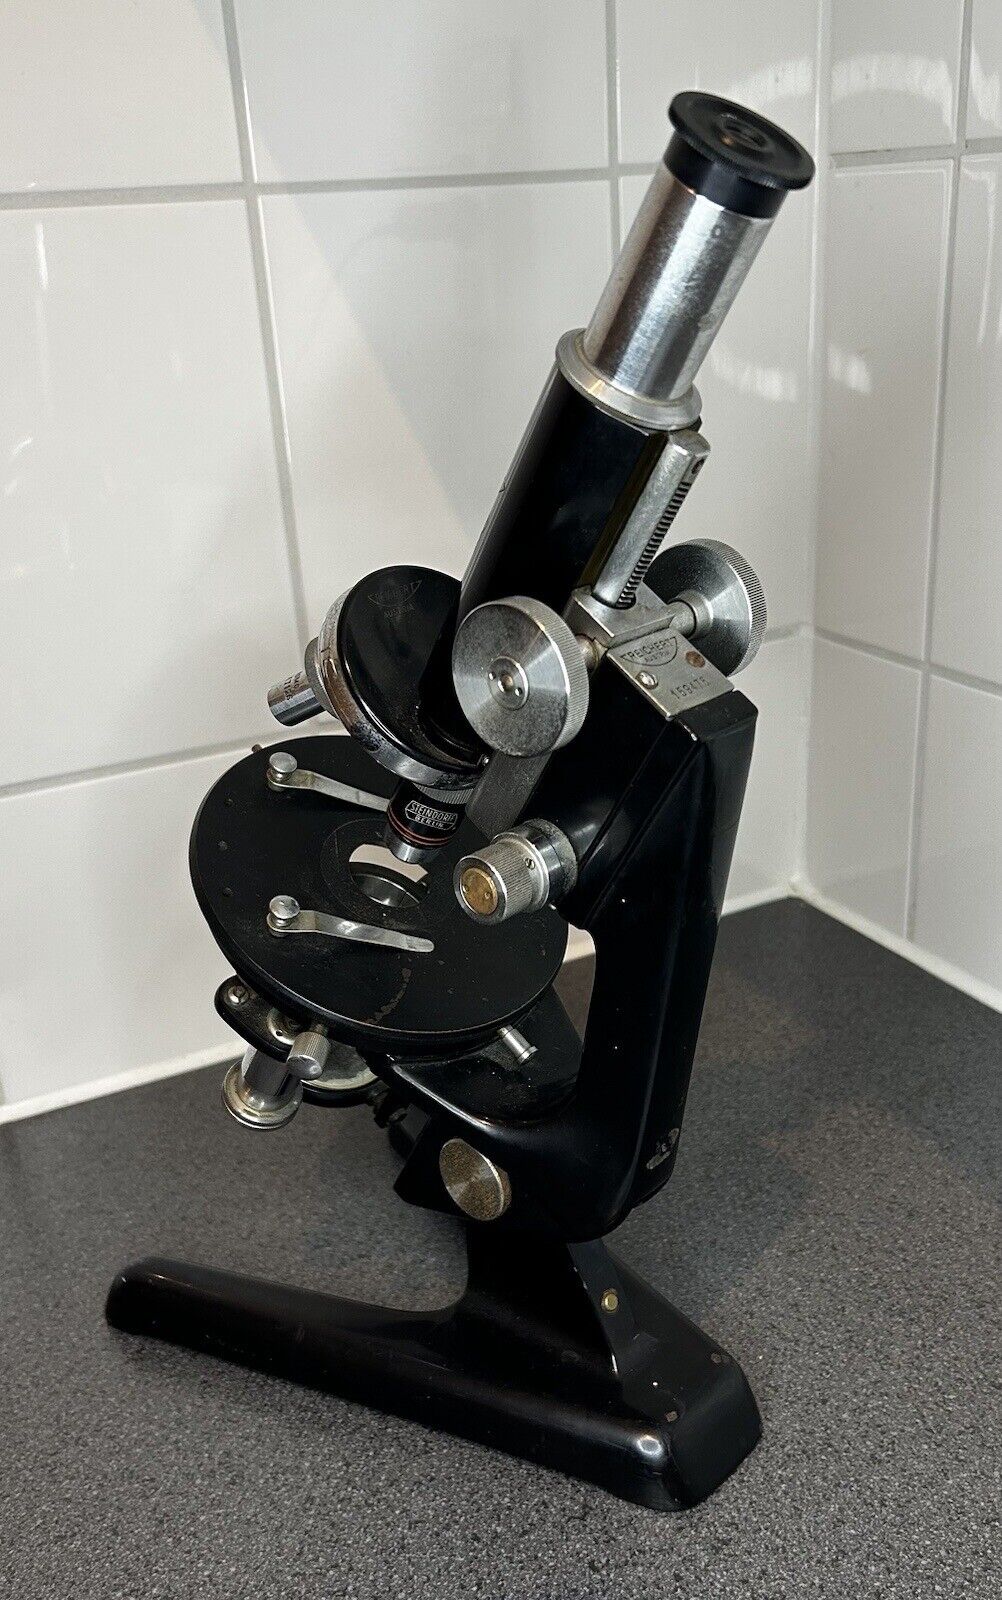 Vintage microscope Reichert made in Austria.